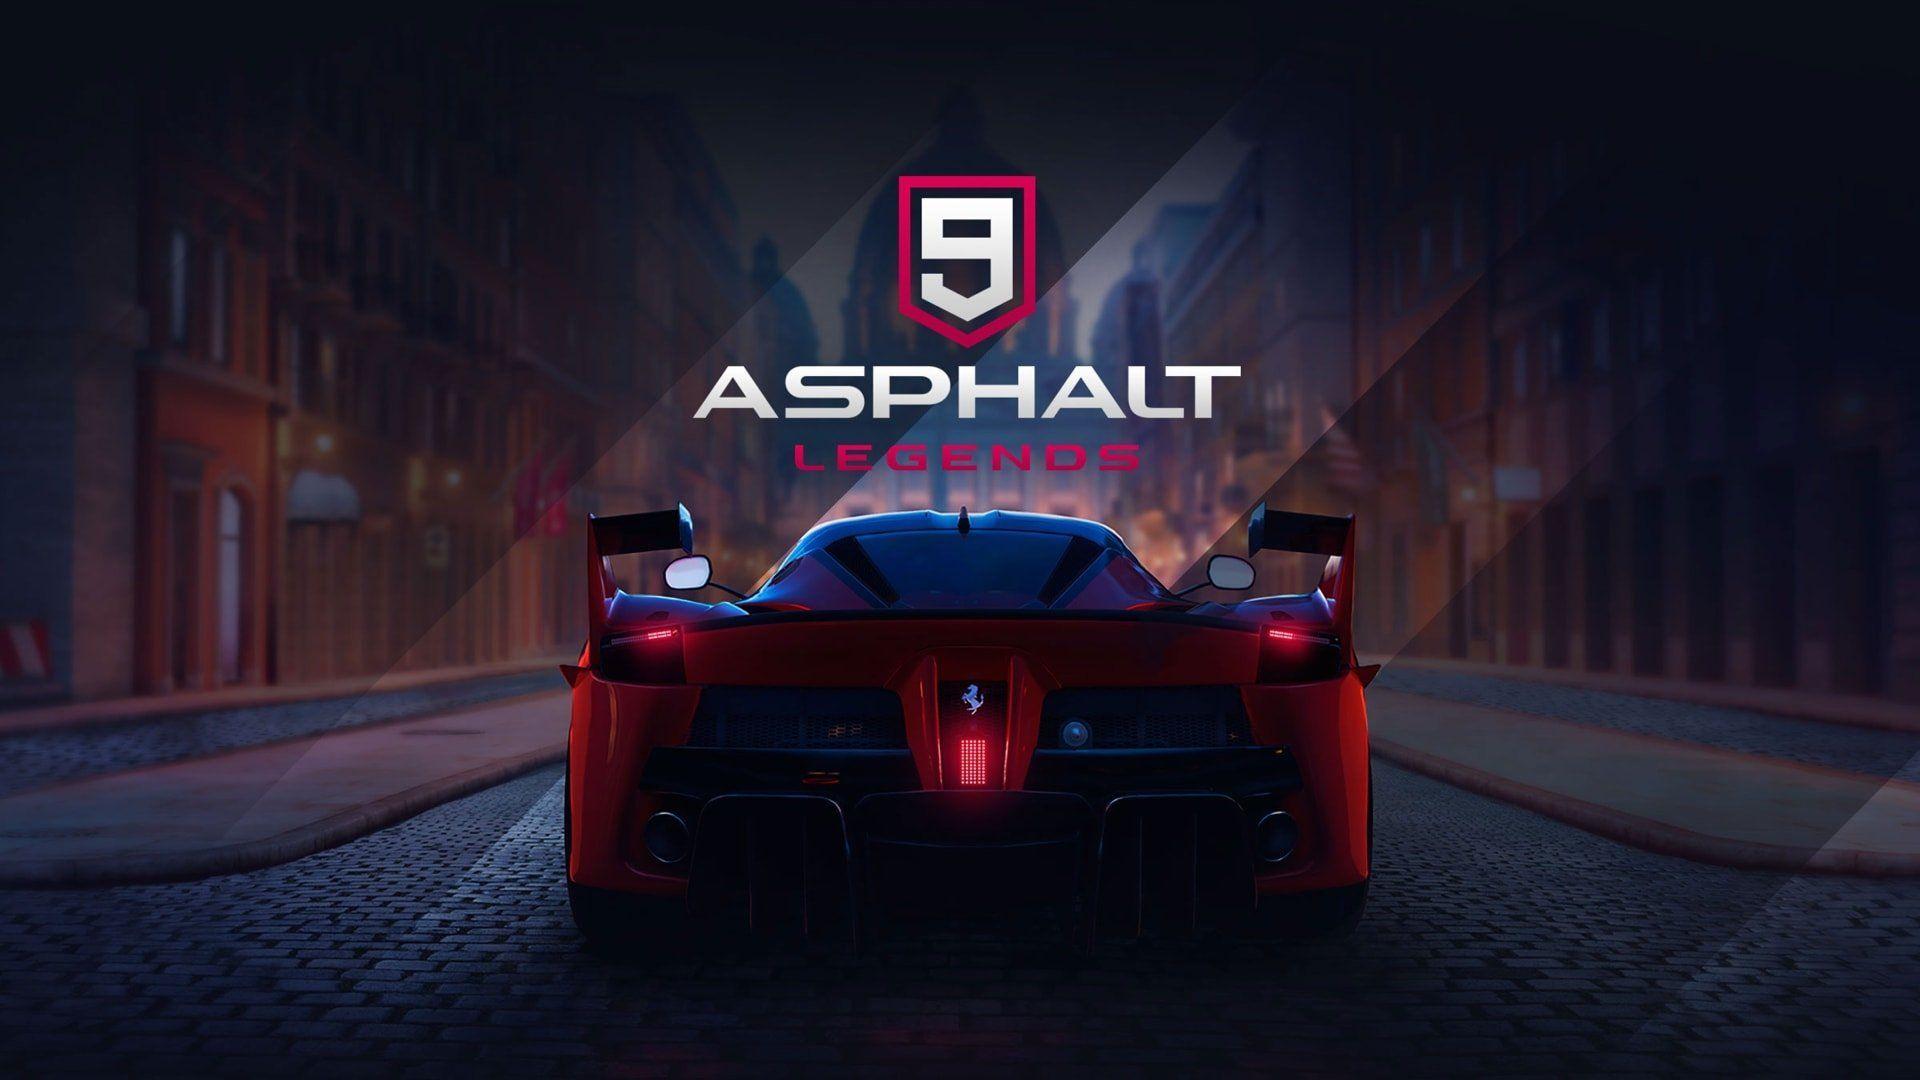 how to download asphalt 9 on ps4